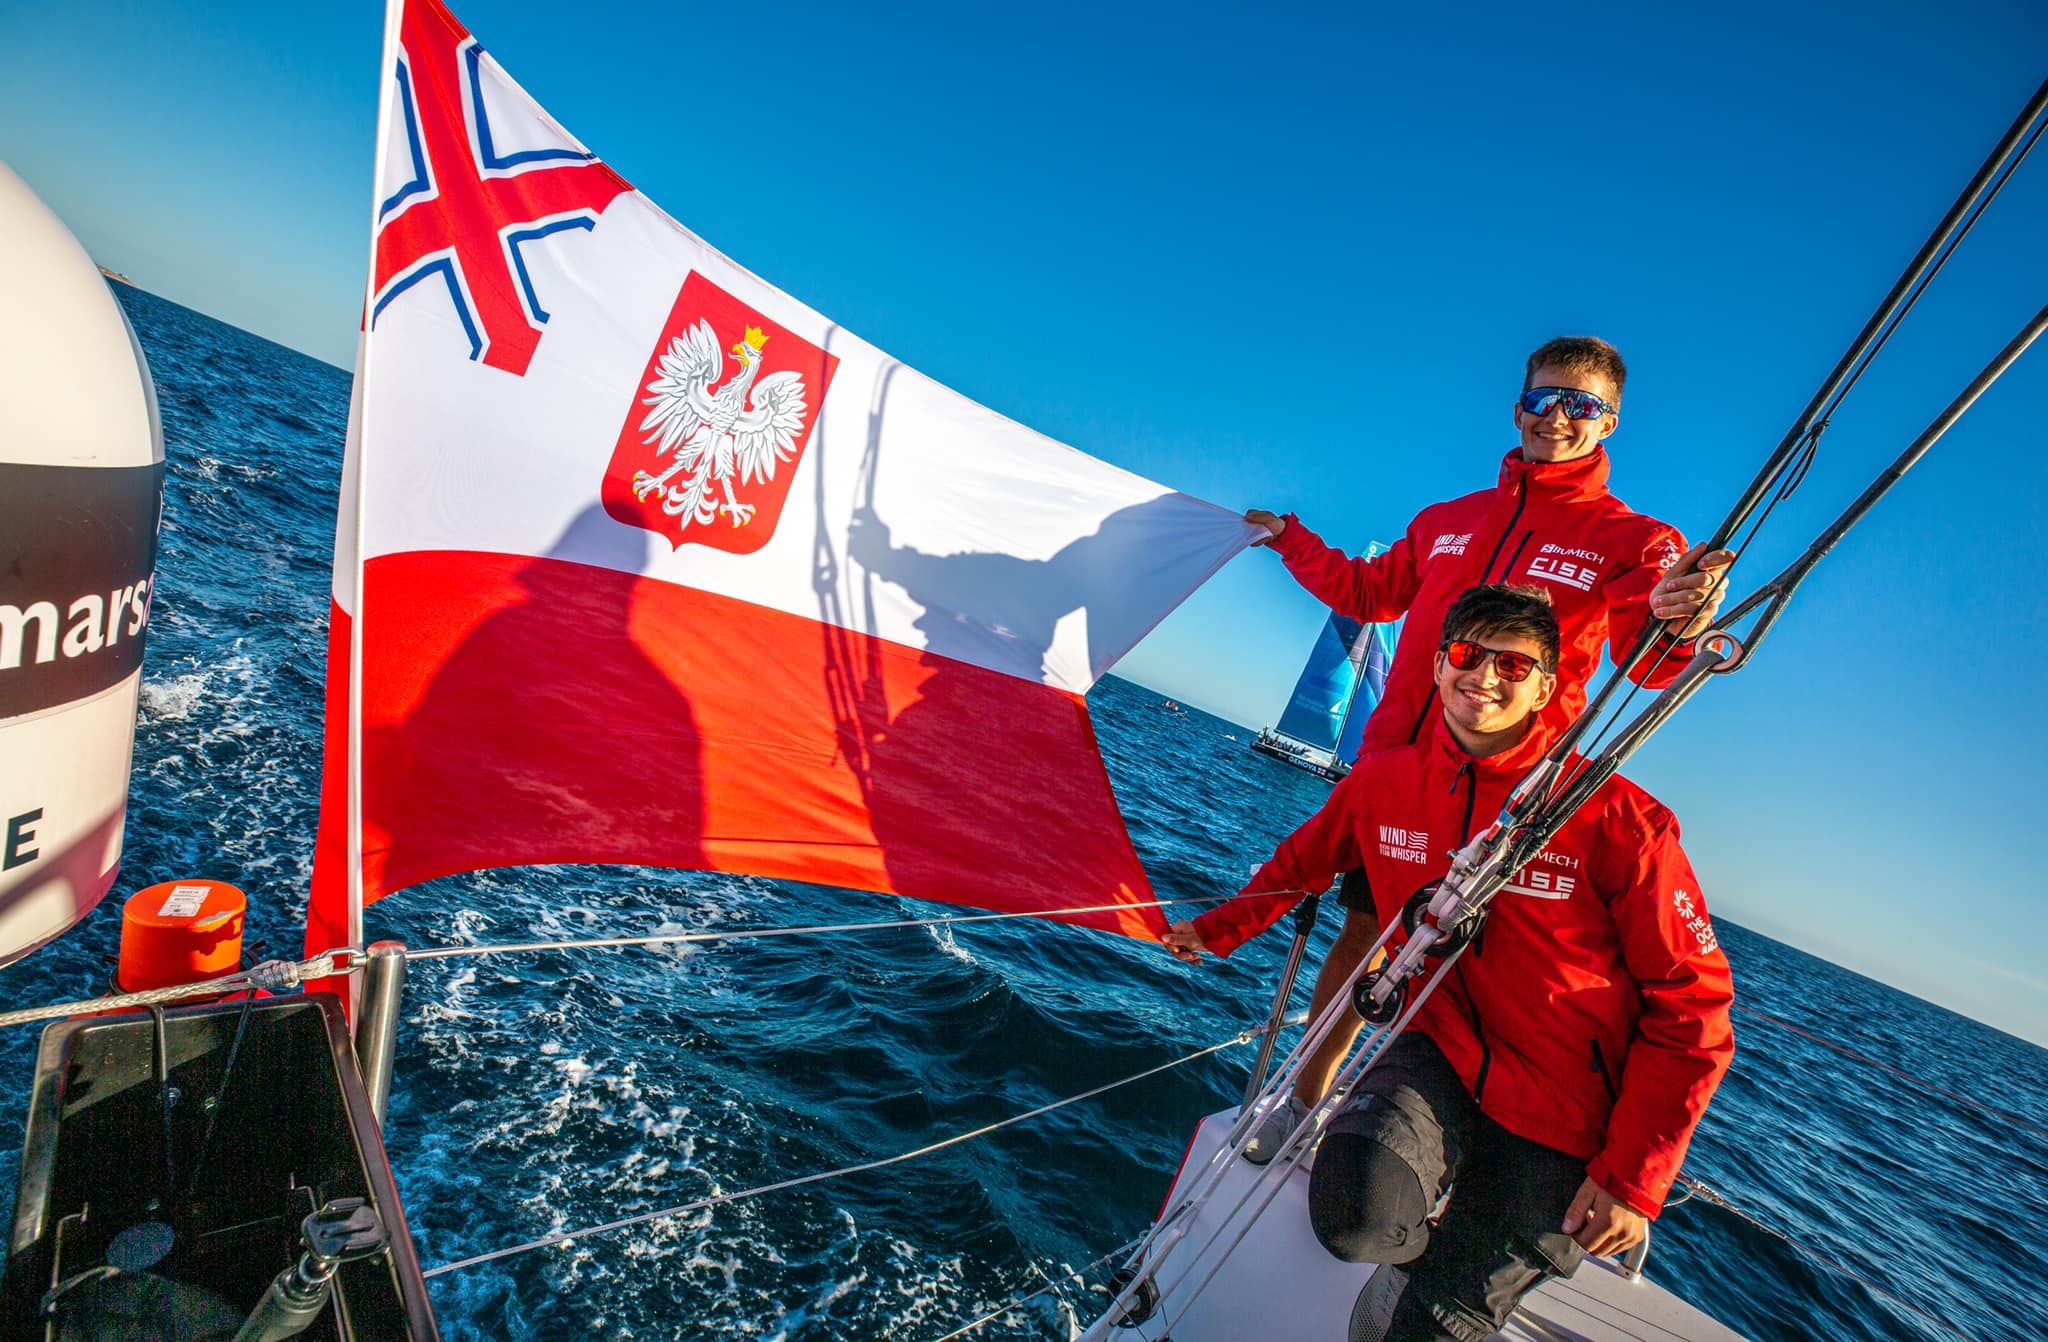 Załoga WindWhisper żeglowała pod białoczerwoną banderą Yacht Klubu Polski Gdynia. Źródło: www.facebook.com/WindWhisperRacingTeam